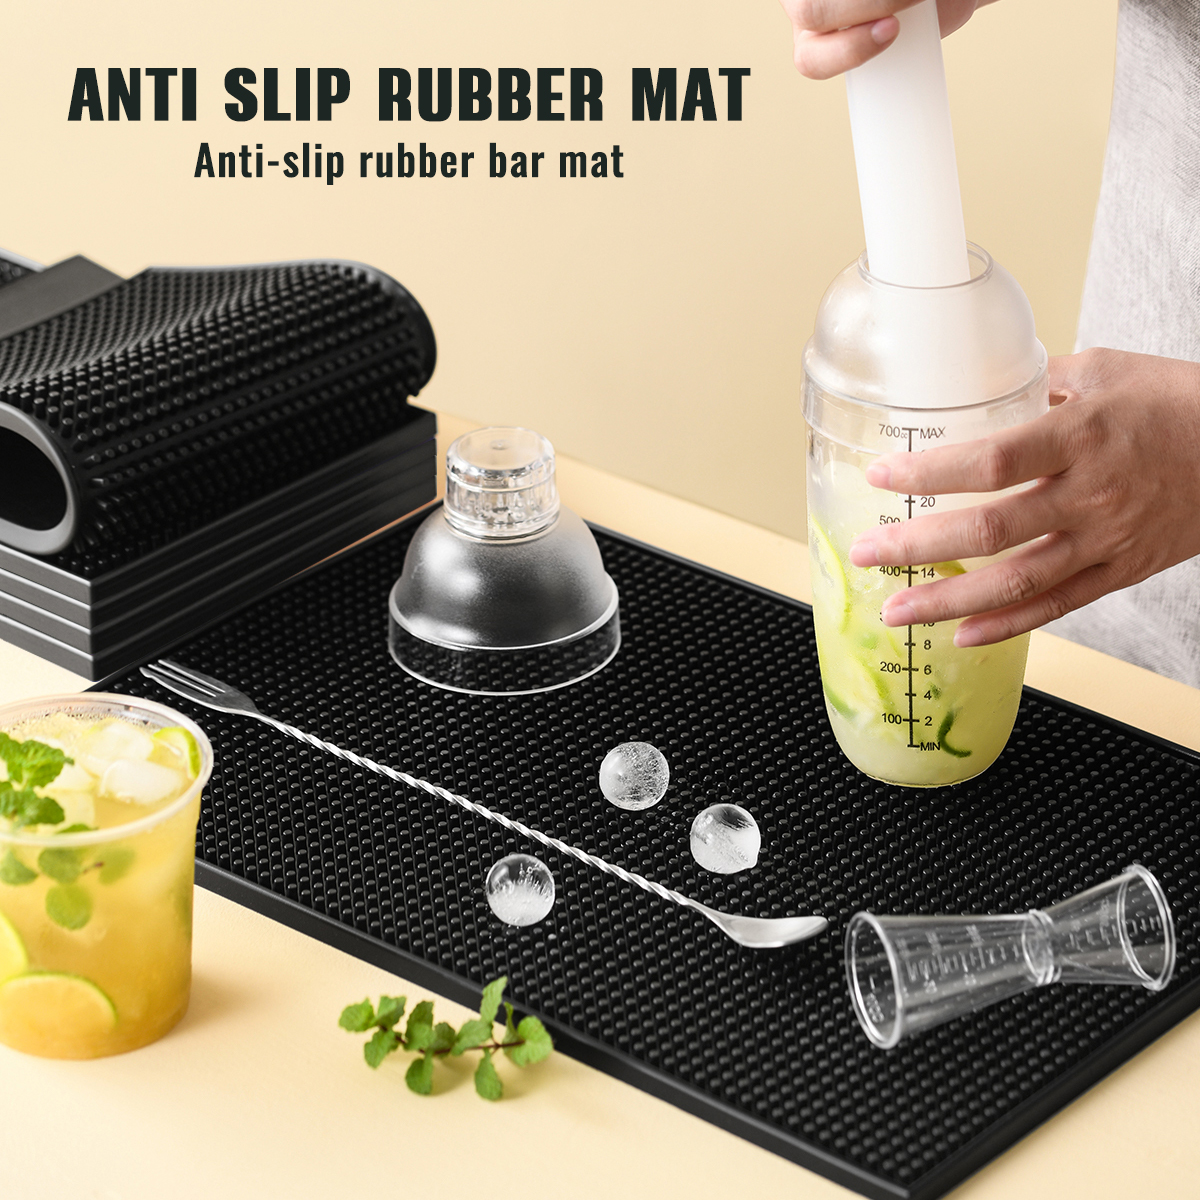 Rubber Barber Service Mat, Black Coffee Bar Mats Spill Mat for